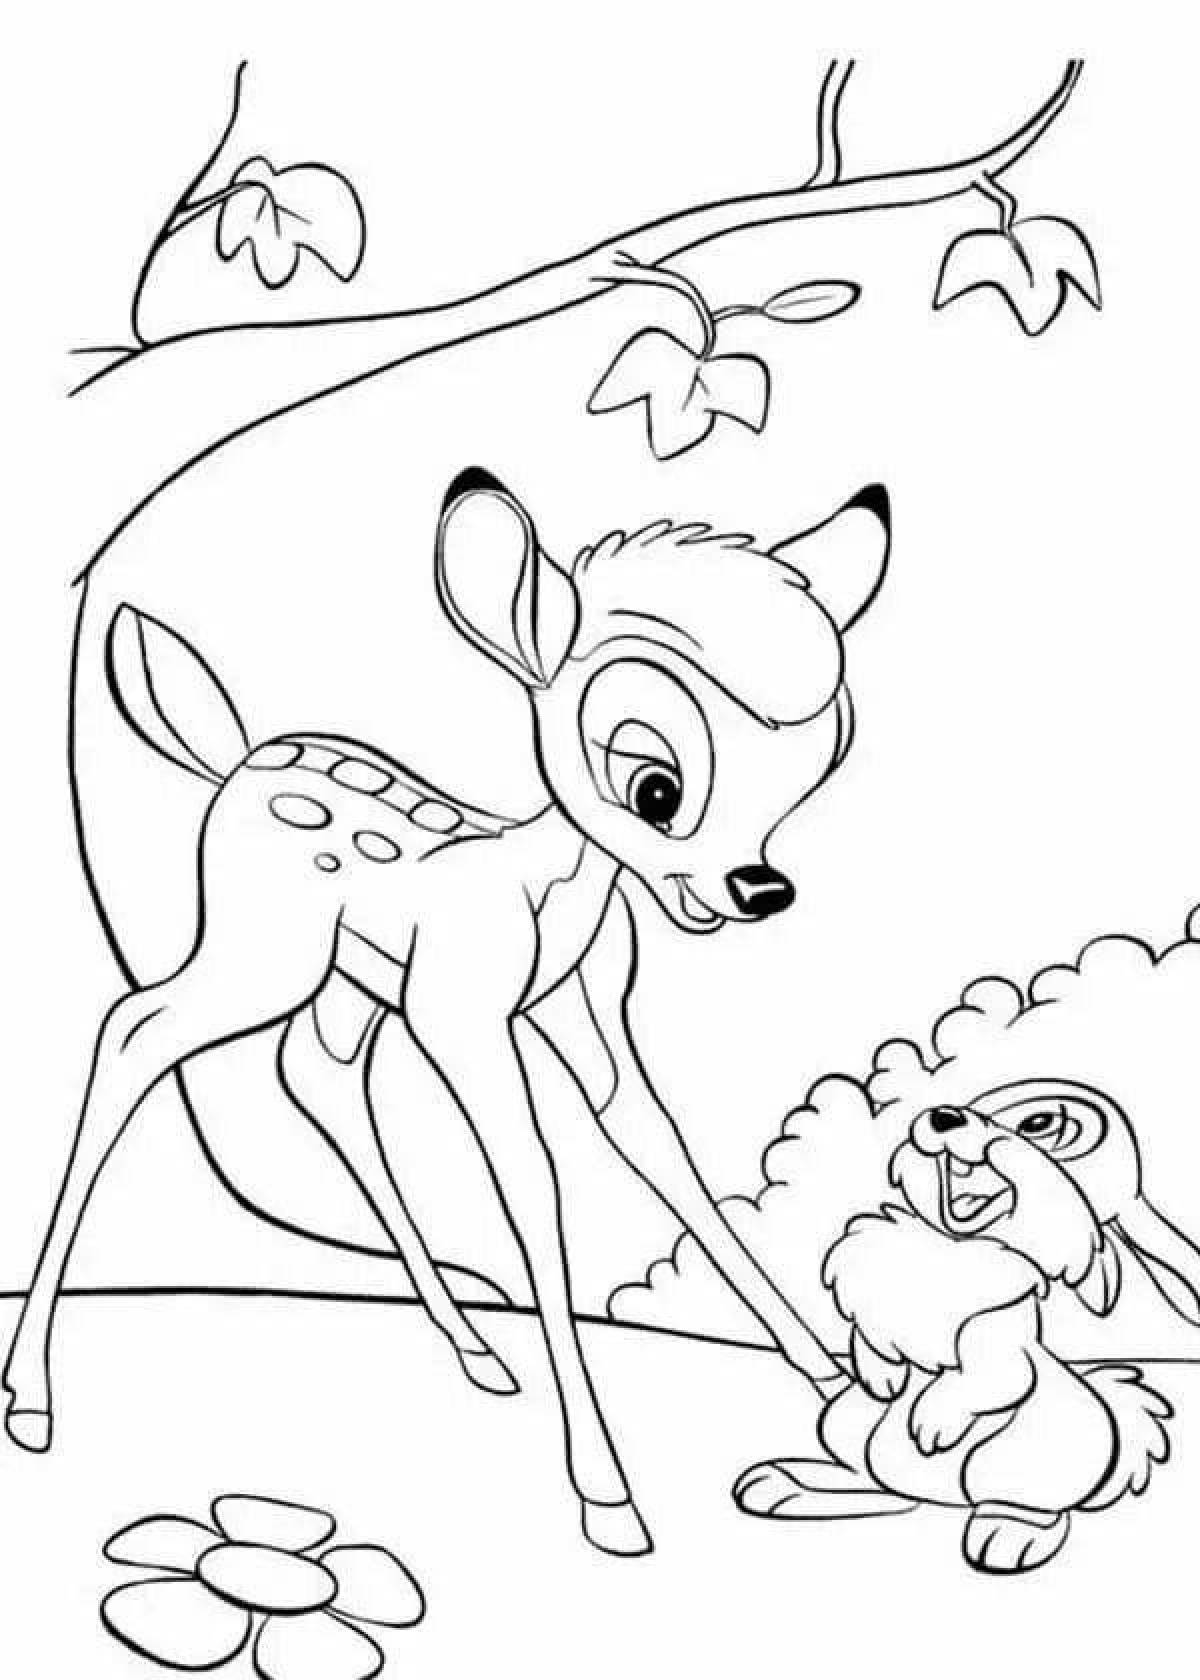 Coloring book playful bambi faun